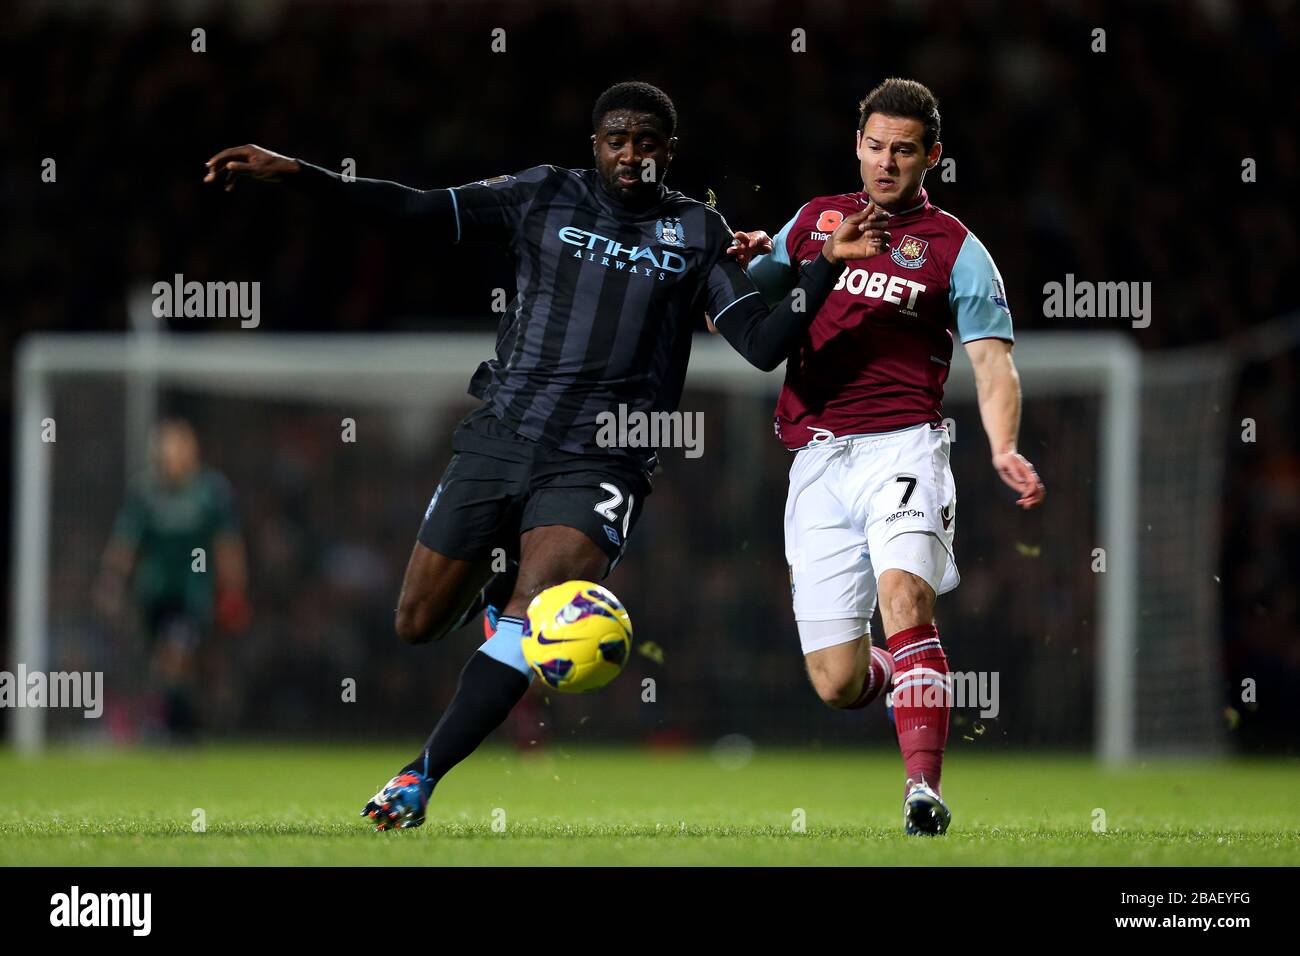 Der Matte Jarvis (rechts) von West Ham United und der Kolo Toure von Manchester City kämpfen um den Ball Stockfoto